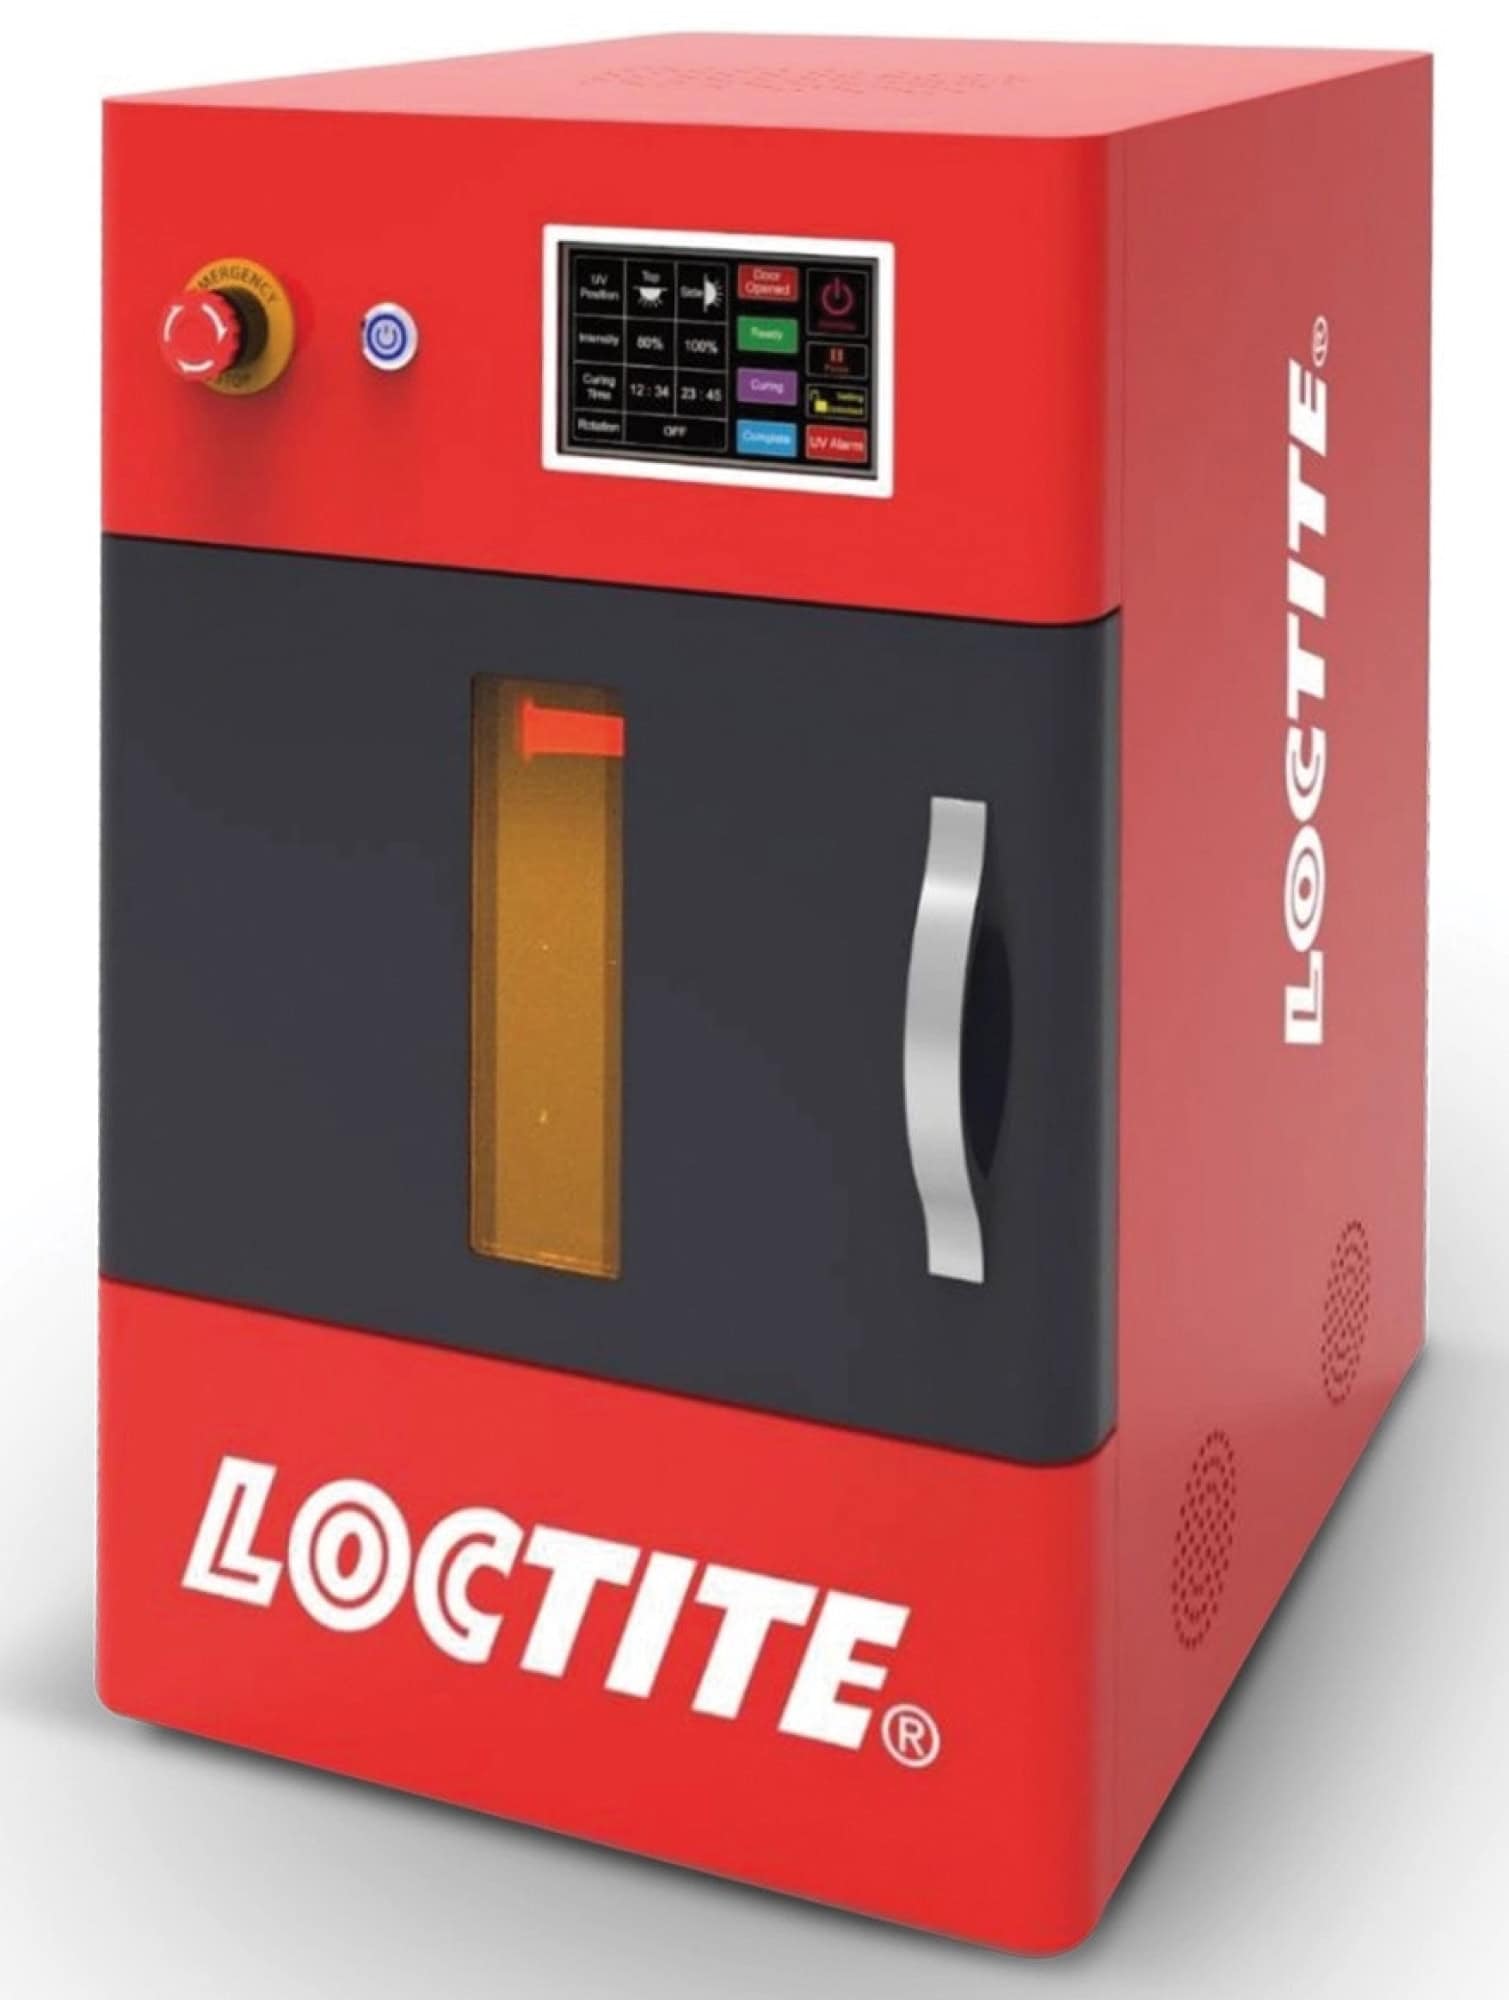 Henkel™ Loctite® Aushärtekammer 3D Printing EQ CL36 LED Cure Chamber, 2331226, Zur Klebstoffaushärtung